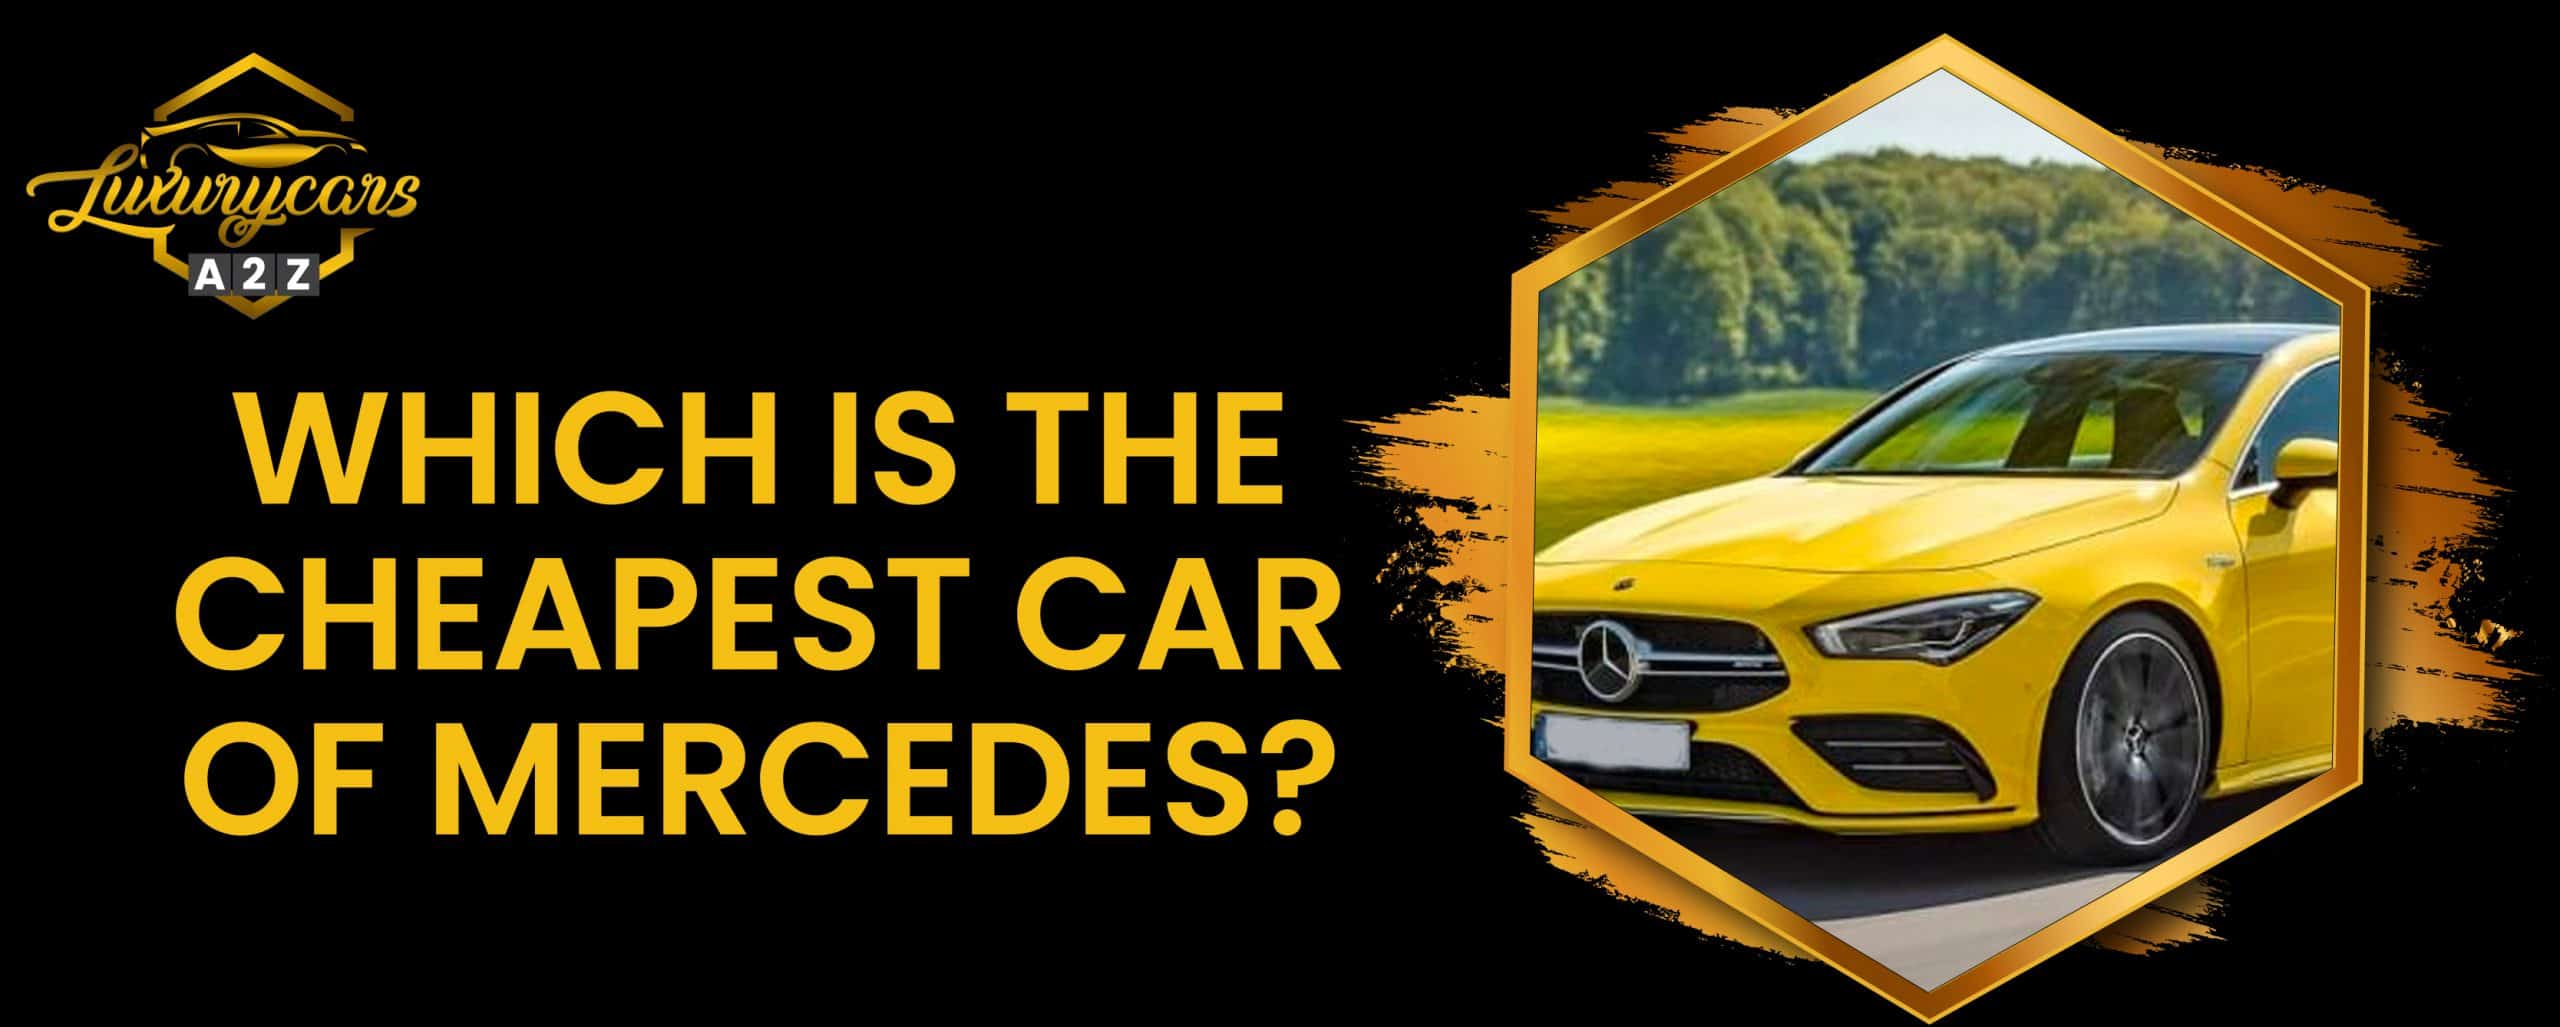 Quelle est la voiture Mercedes la moins chère ?